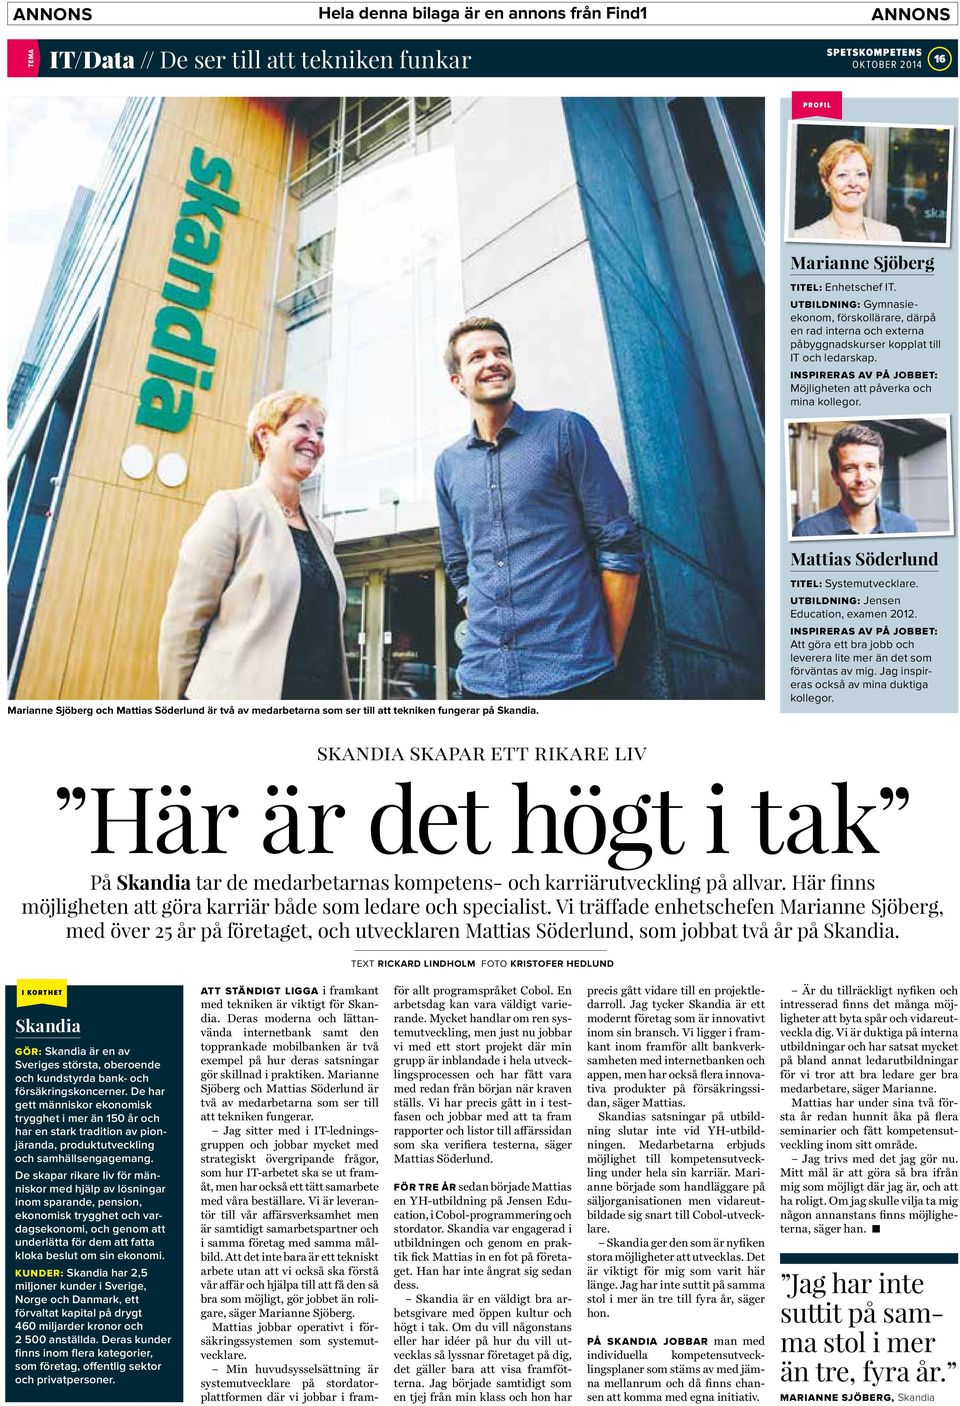 Marianne Sjöberg och Mattias Söderlund är två av medarbetarna som ser till att tekniken fungerar på Skandia. Mattias Söderlund TITEL: Systemutvecklare. UTBILDNING: Jensen Education, examen 2012.